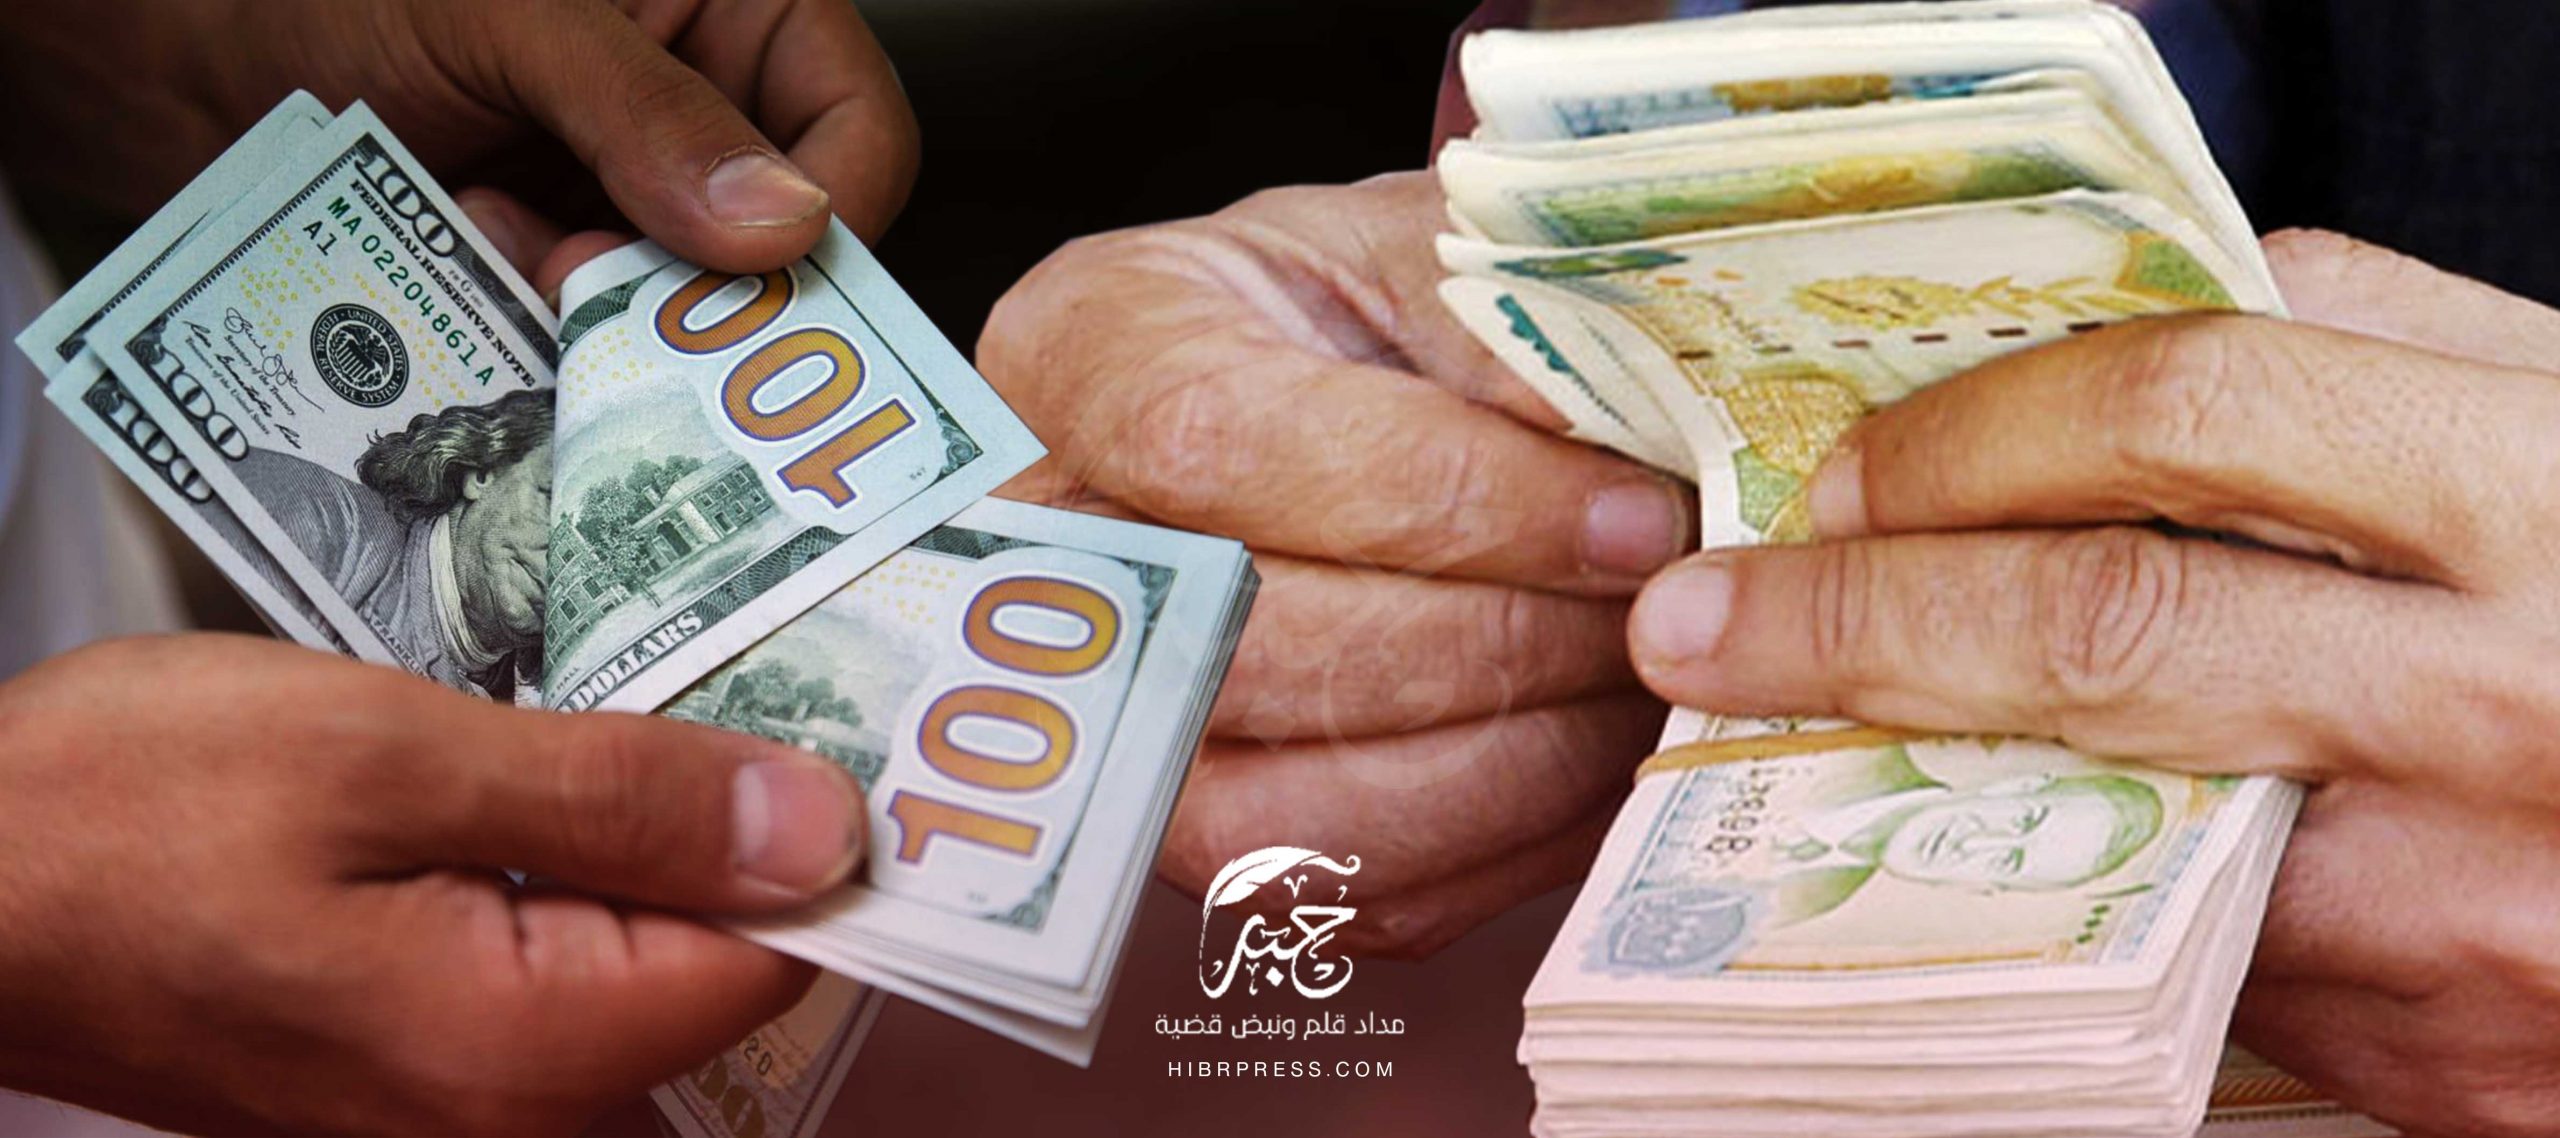 استمرت الليرة السورية بالخسارة أمام العملات الأجنبية في التداولات الصباحية لليوم الخميس متجاوزة حاجز 3000 ليرة في دمشق وبعض المناطق.